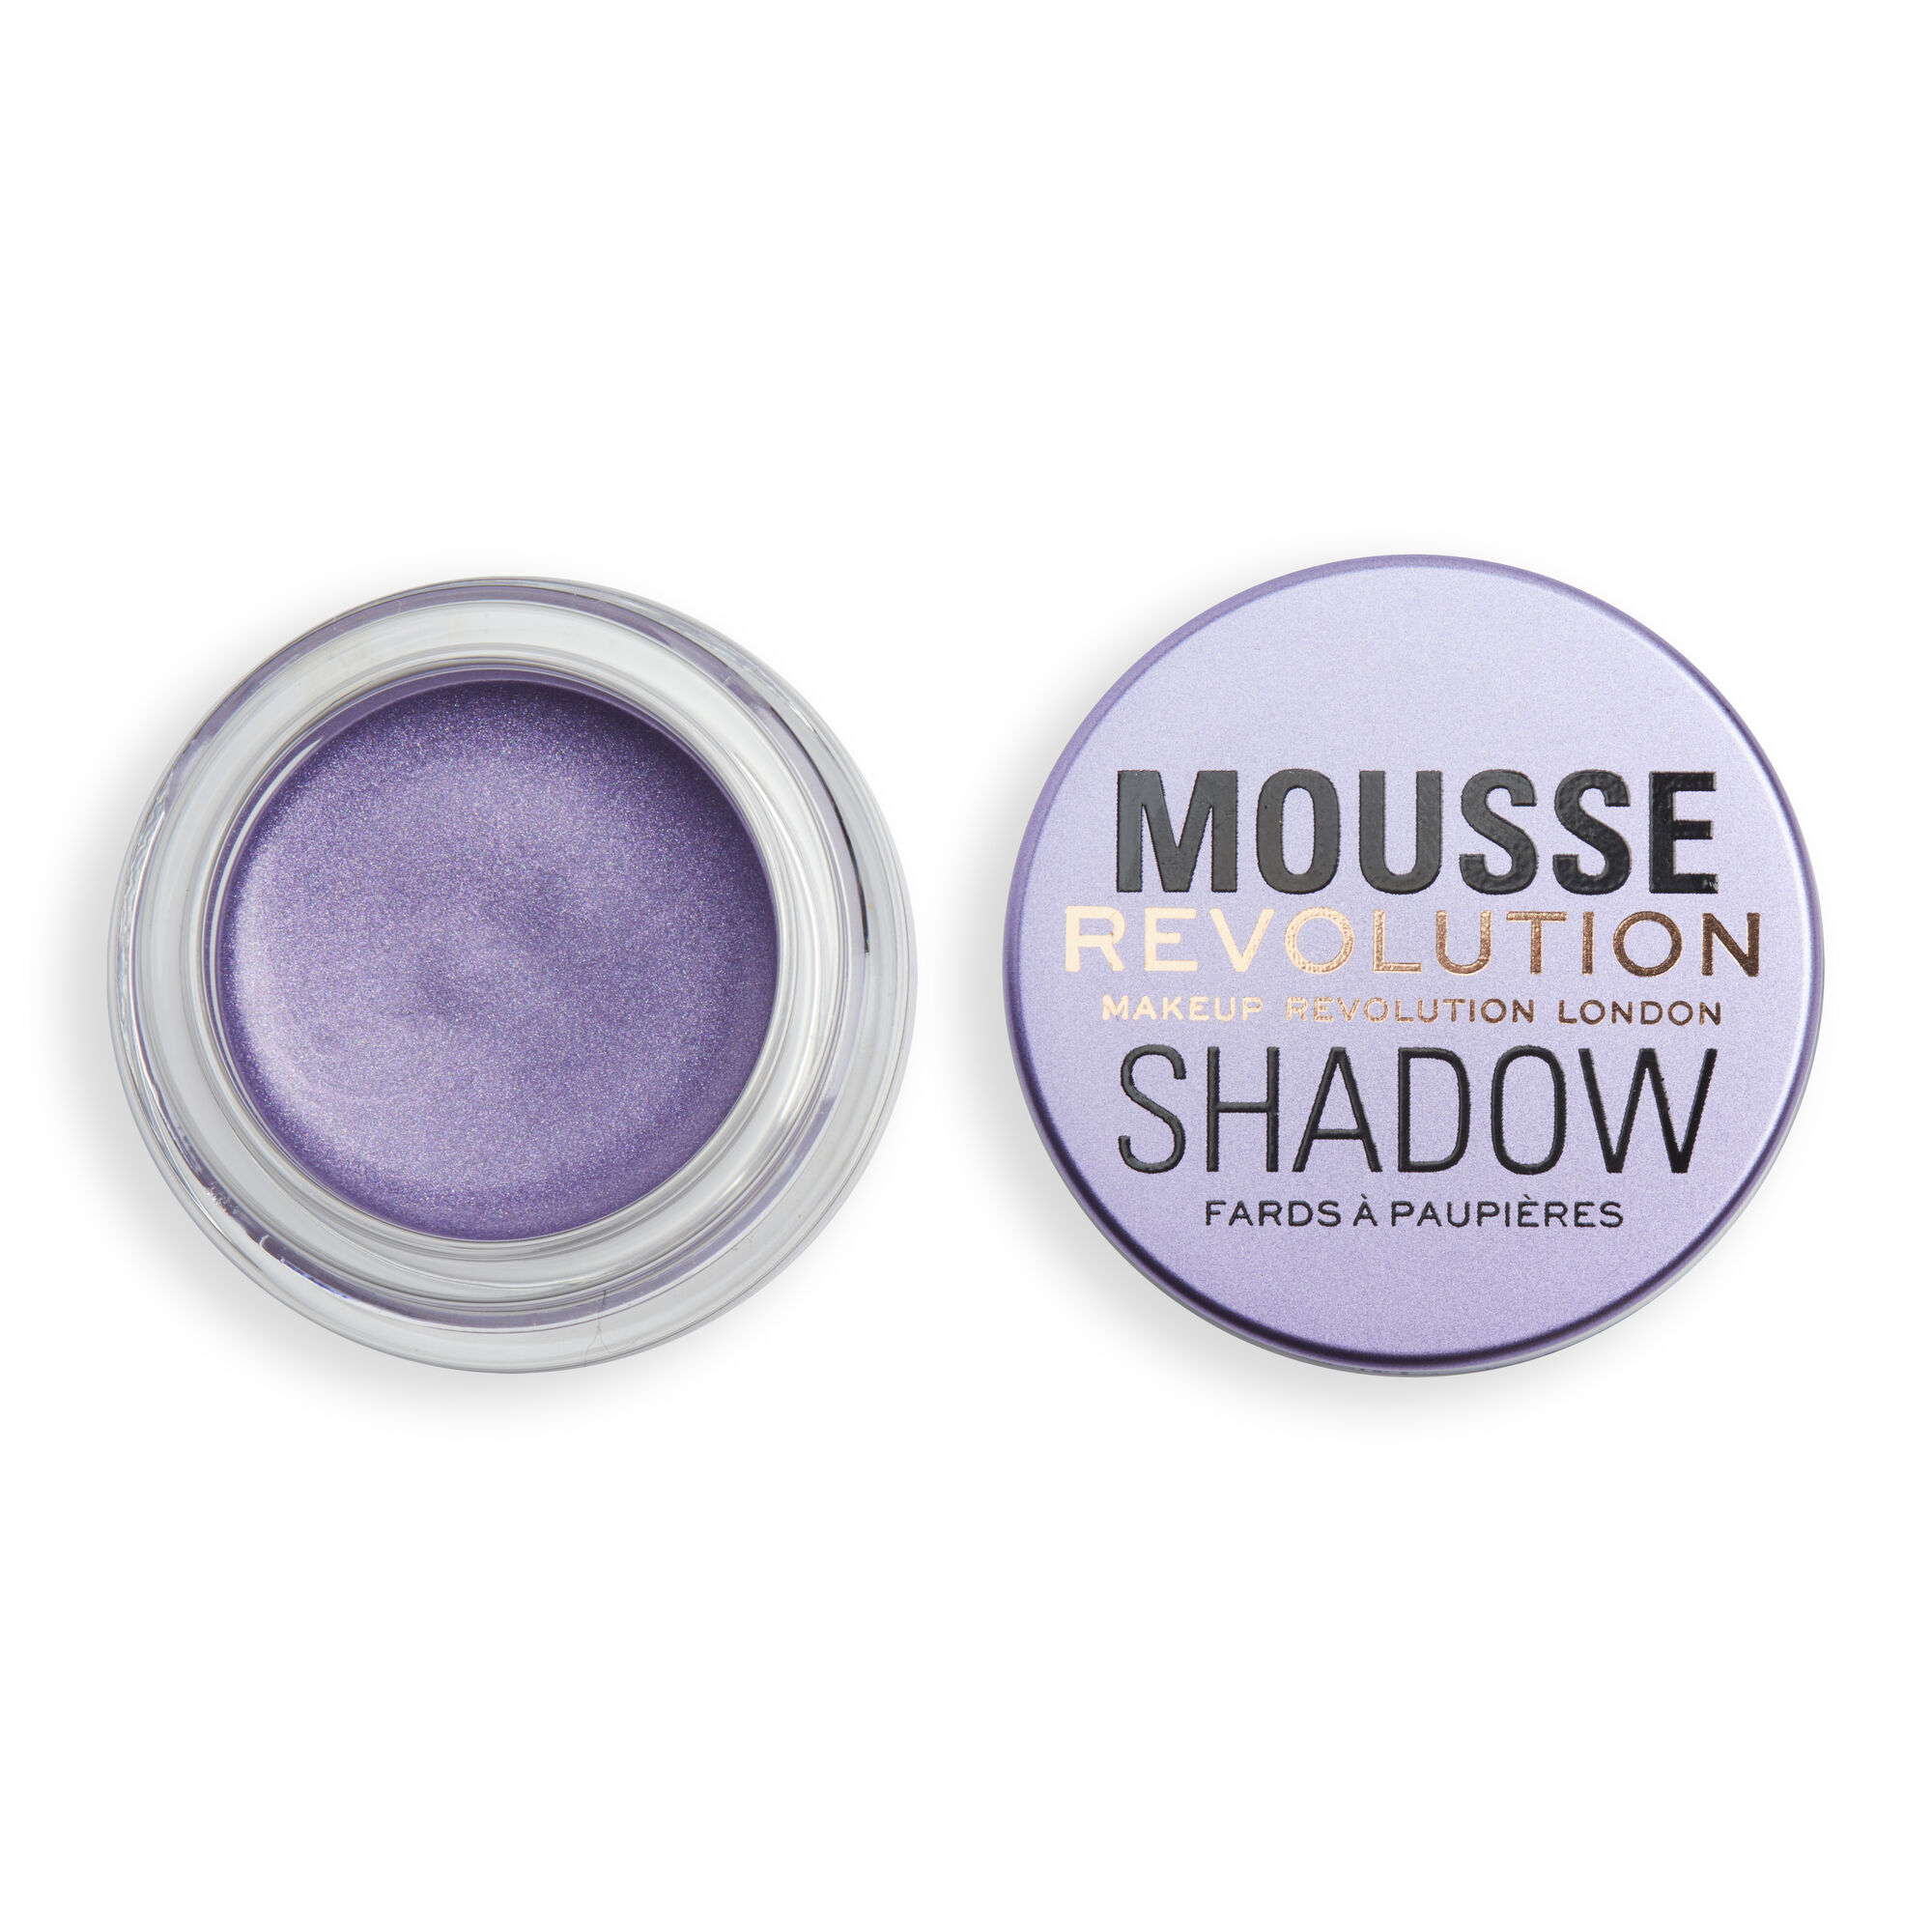 Тени Revolution Makeup кремовые для век Mousse Cream Eyeshadow, Lilac тени для век revolution pro glam palette she s dreamy green